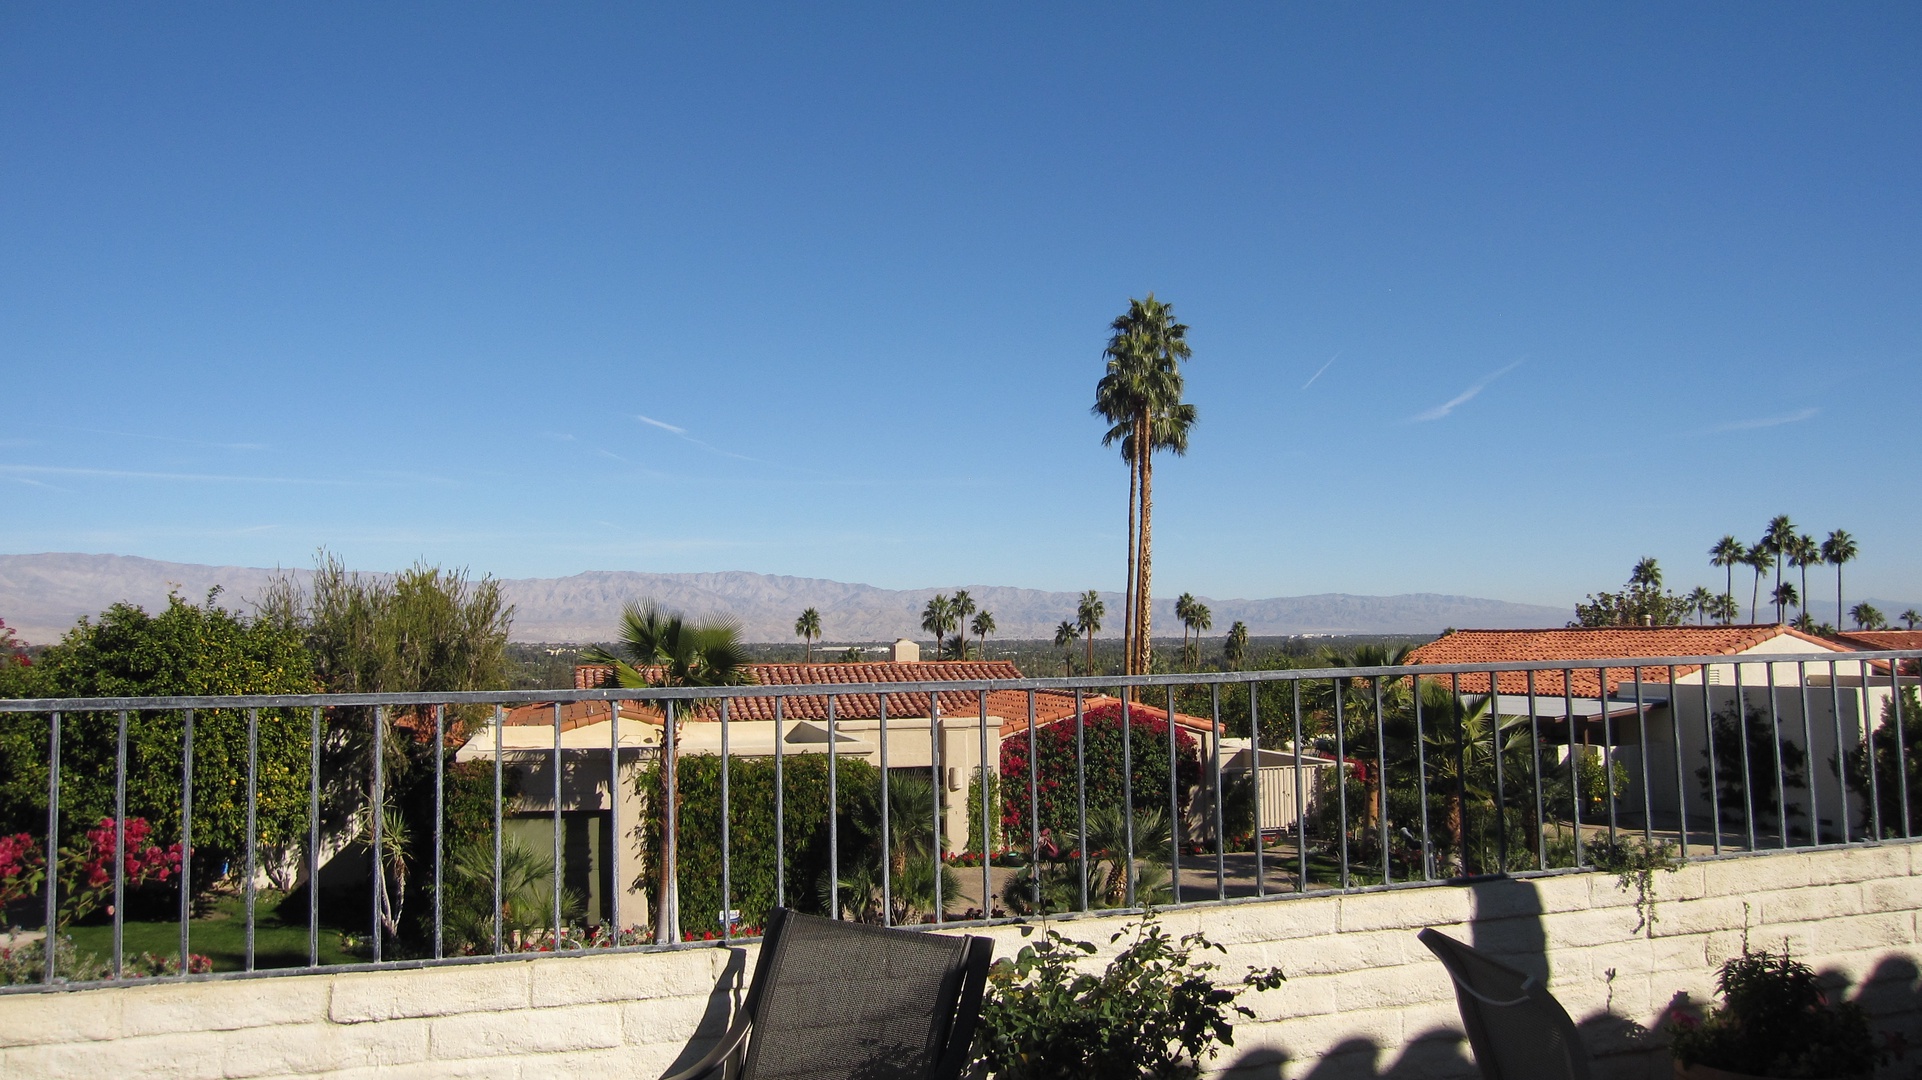 Views of Rancho Mirage